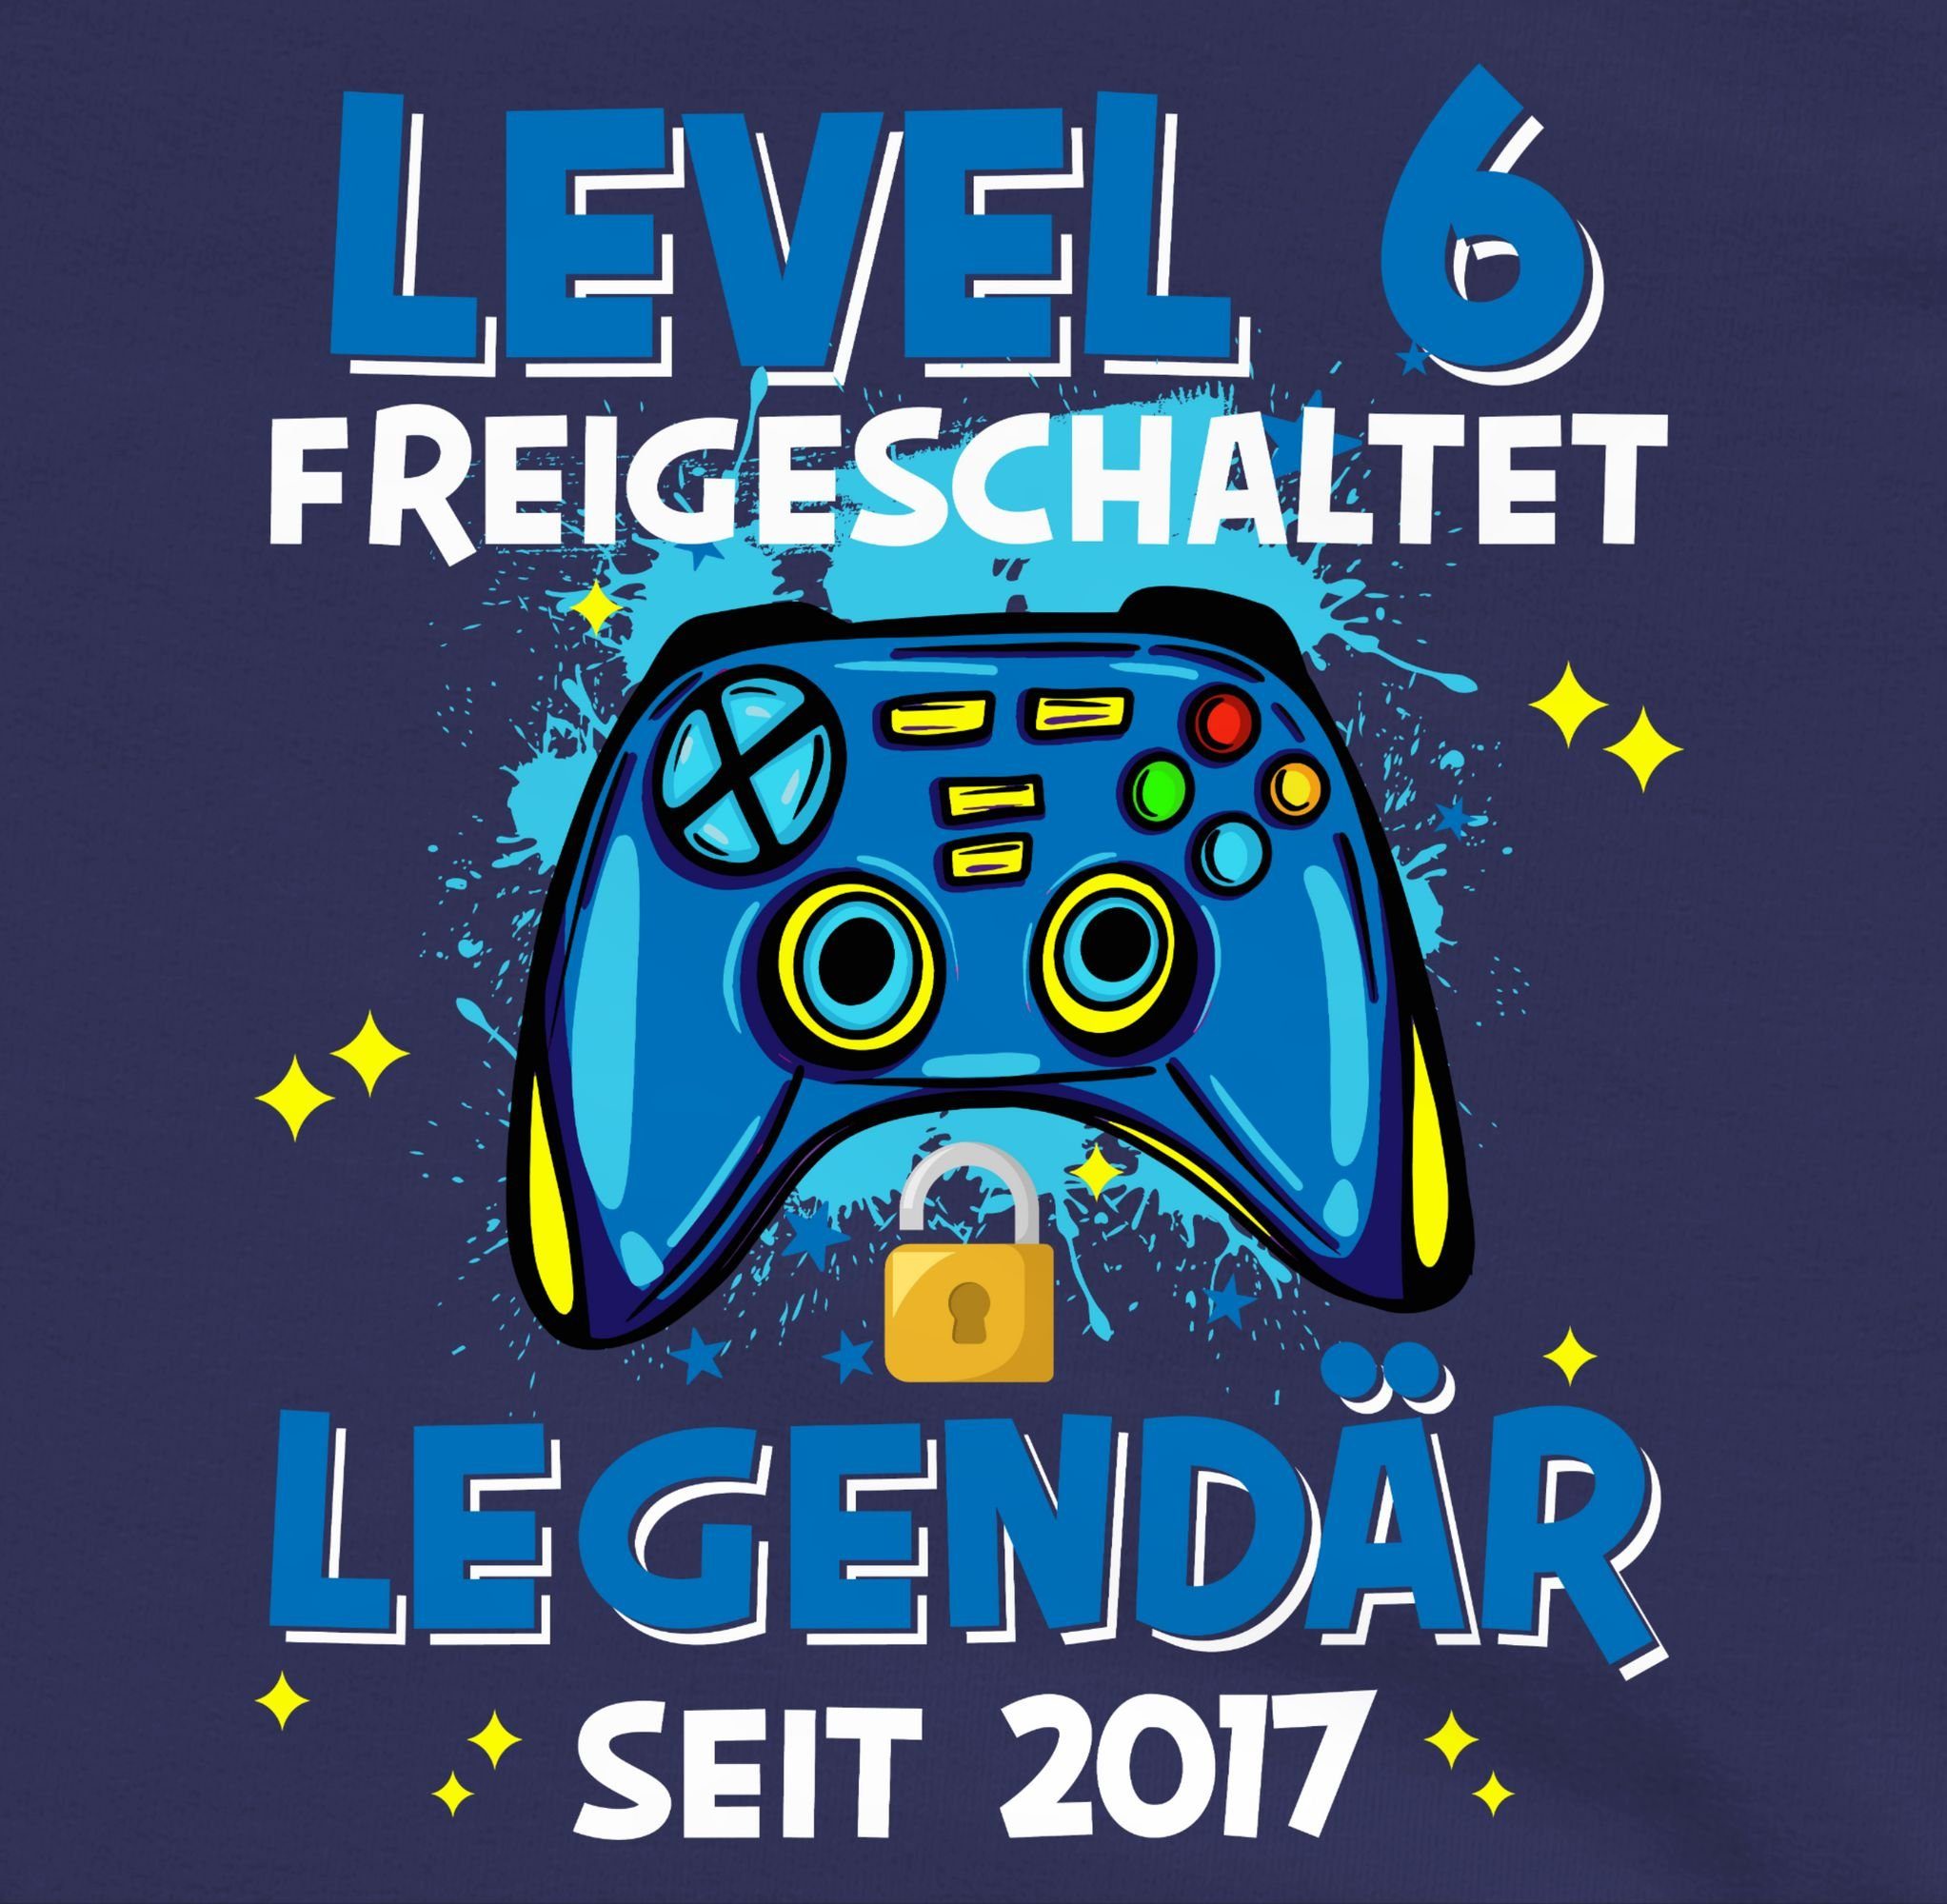 1 2017 Level Legendär Shirtracer Geburtstag 6. freigeschaltet Navy Sweatshirt seit Blau 6